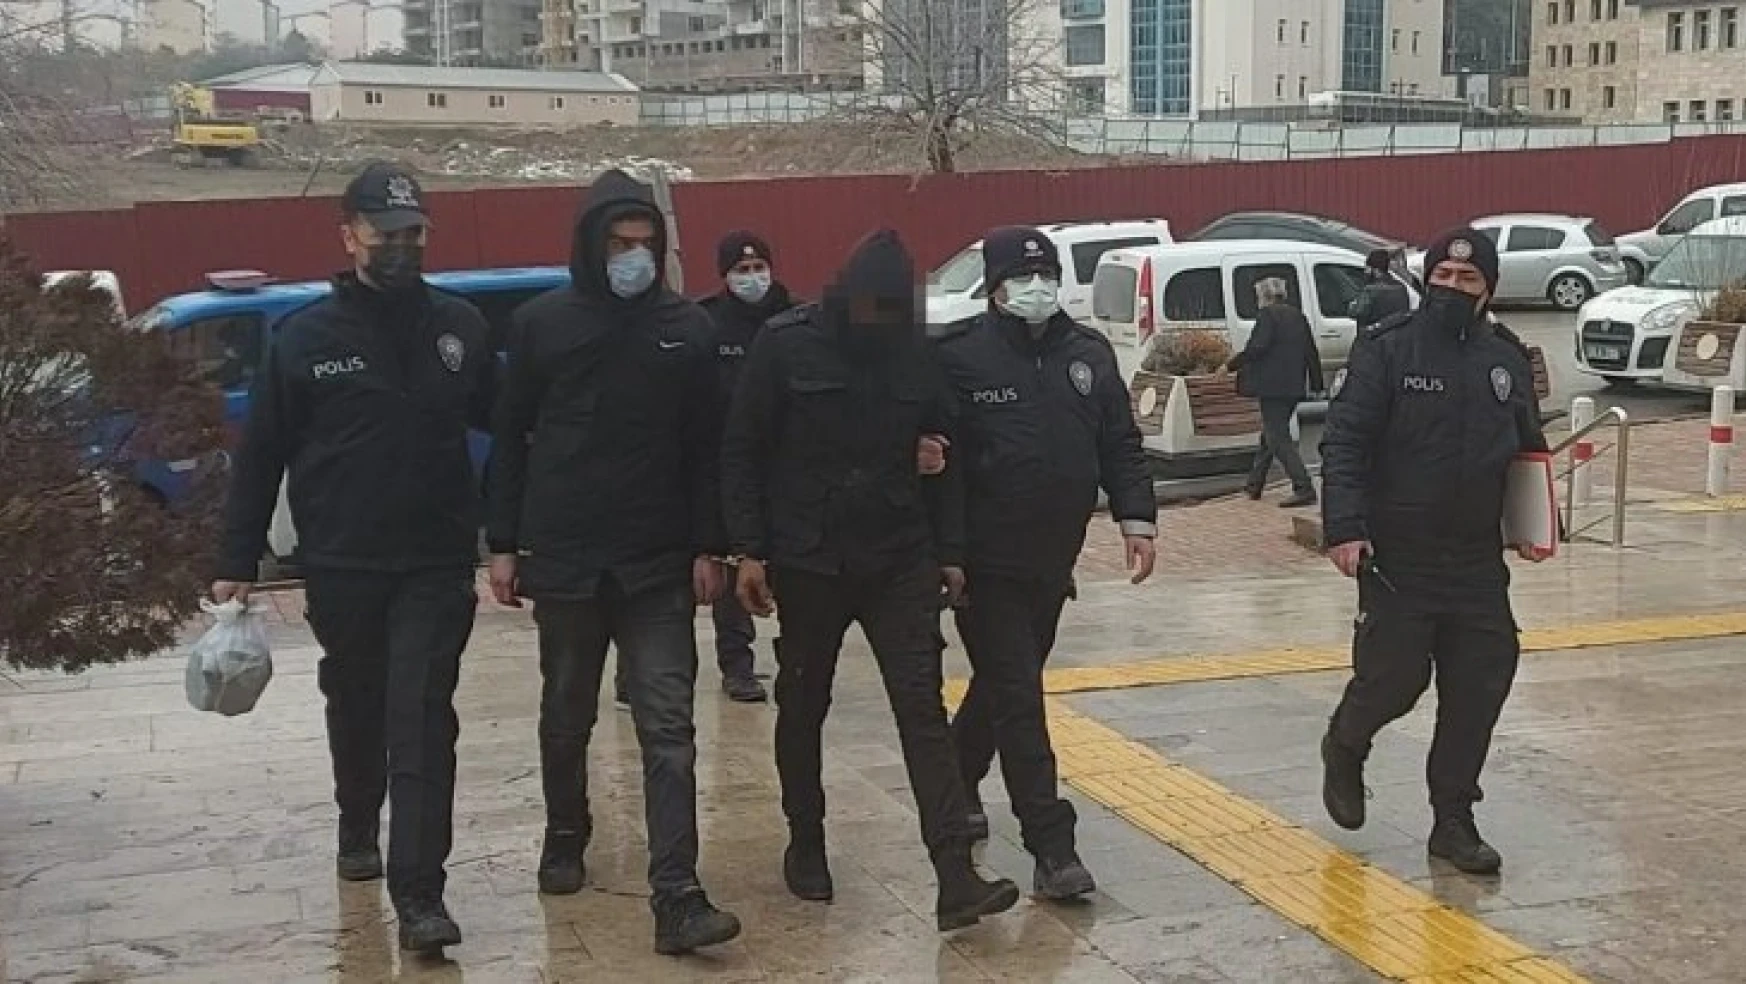 Elazığ'da kablo çalan 3 şüpheli polis ekipleri tarafından yakalandı